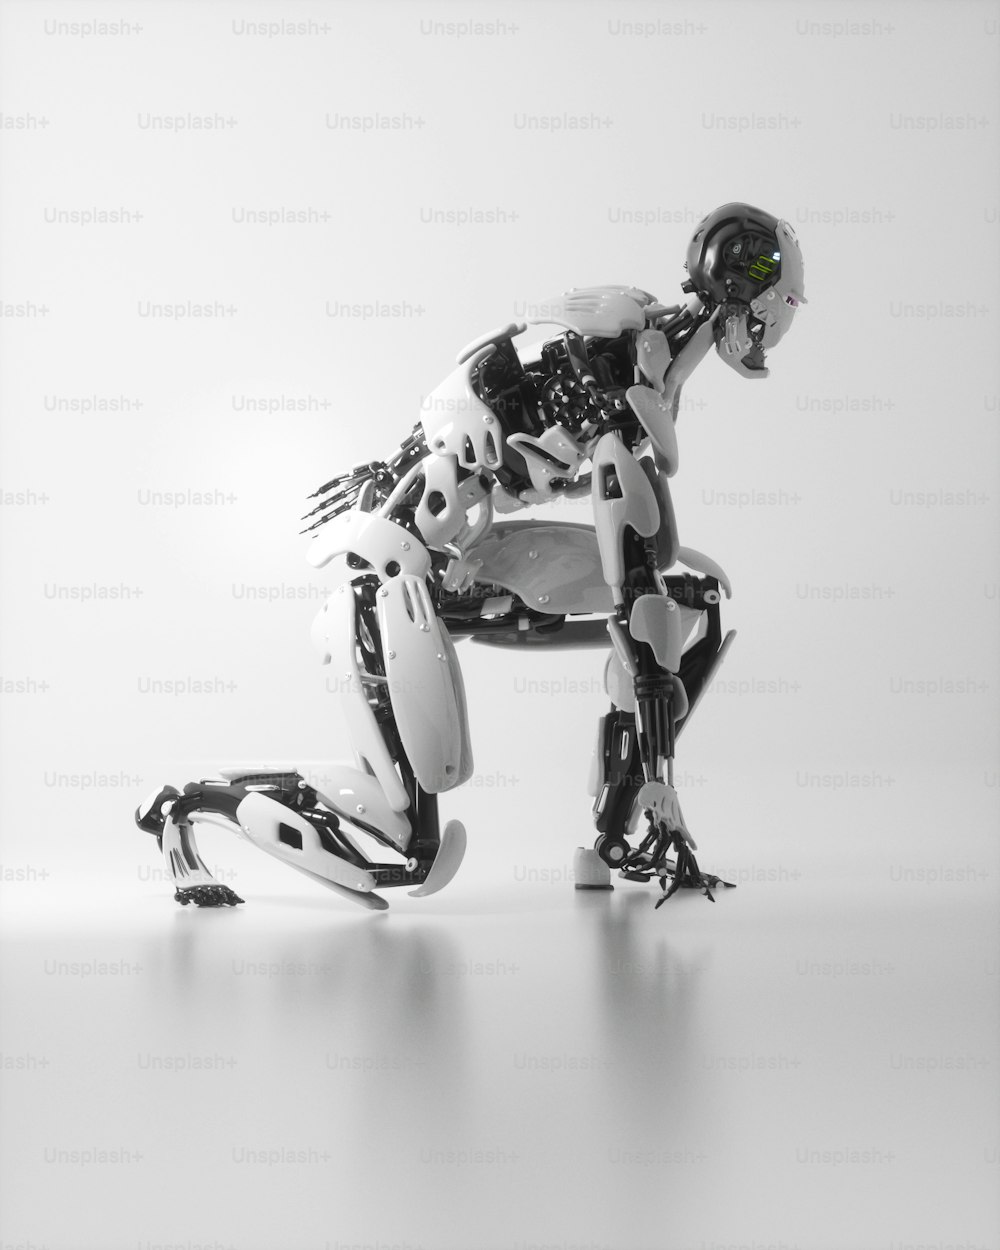 Una foto in bianco e nero di un robot